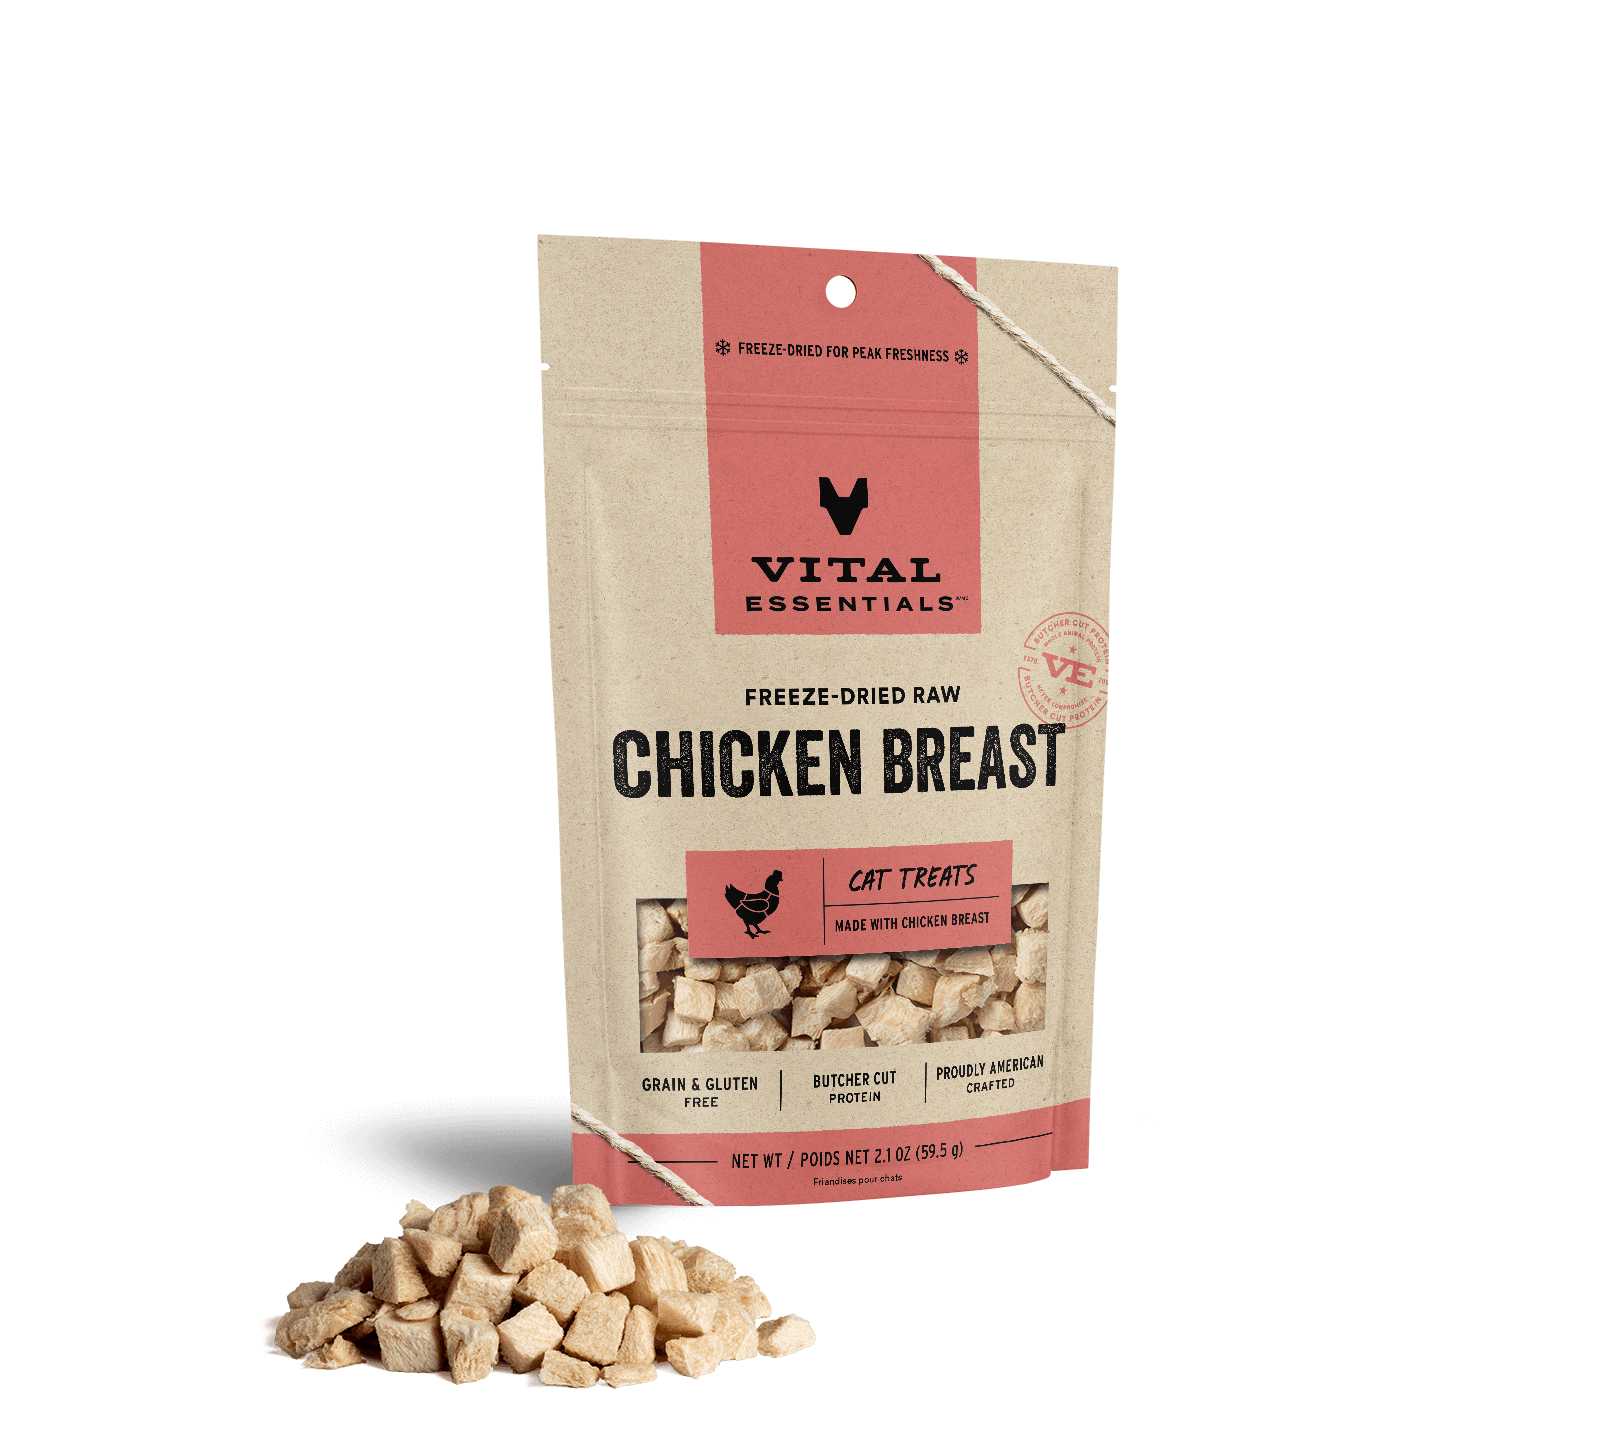 Vital Essentials Freeze-Dried Raw Chicken Breast Cat Treats, 2.1 oz - Health/First Aid